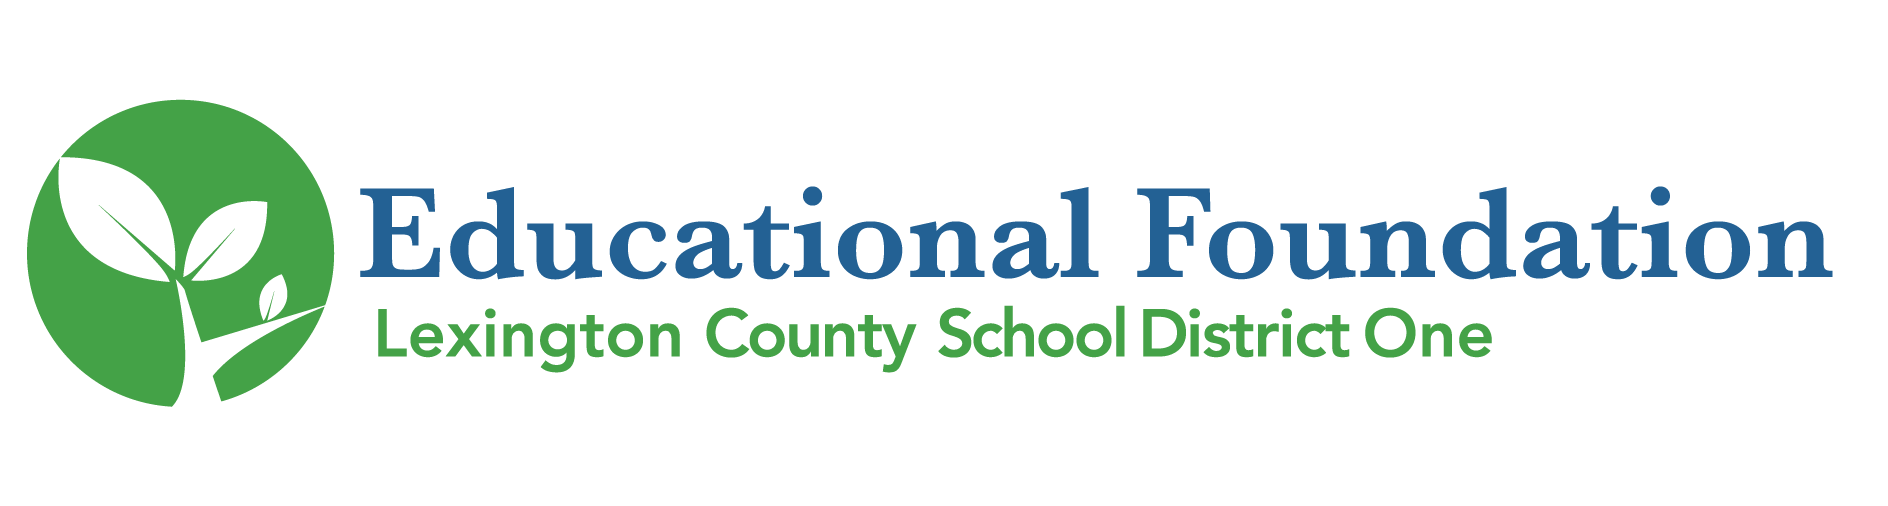 Educational Foundation logo